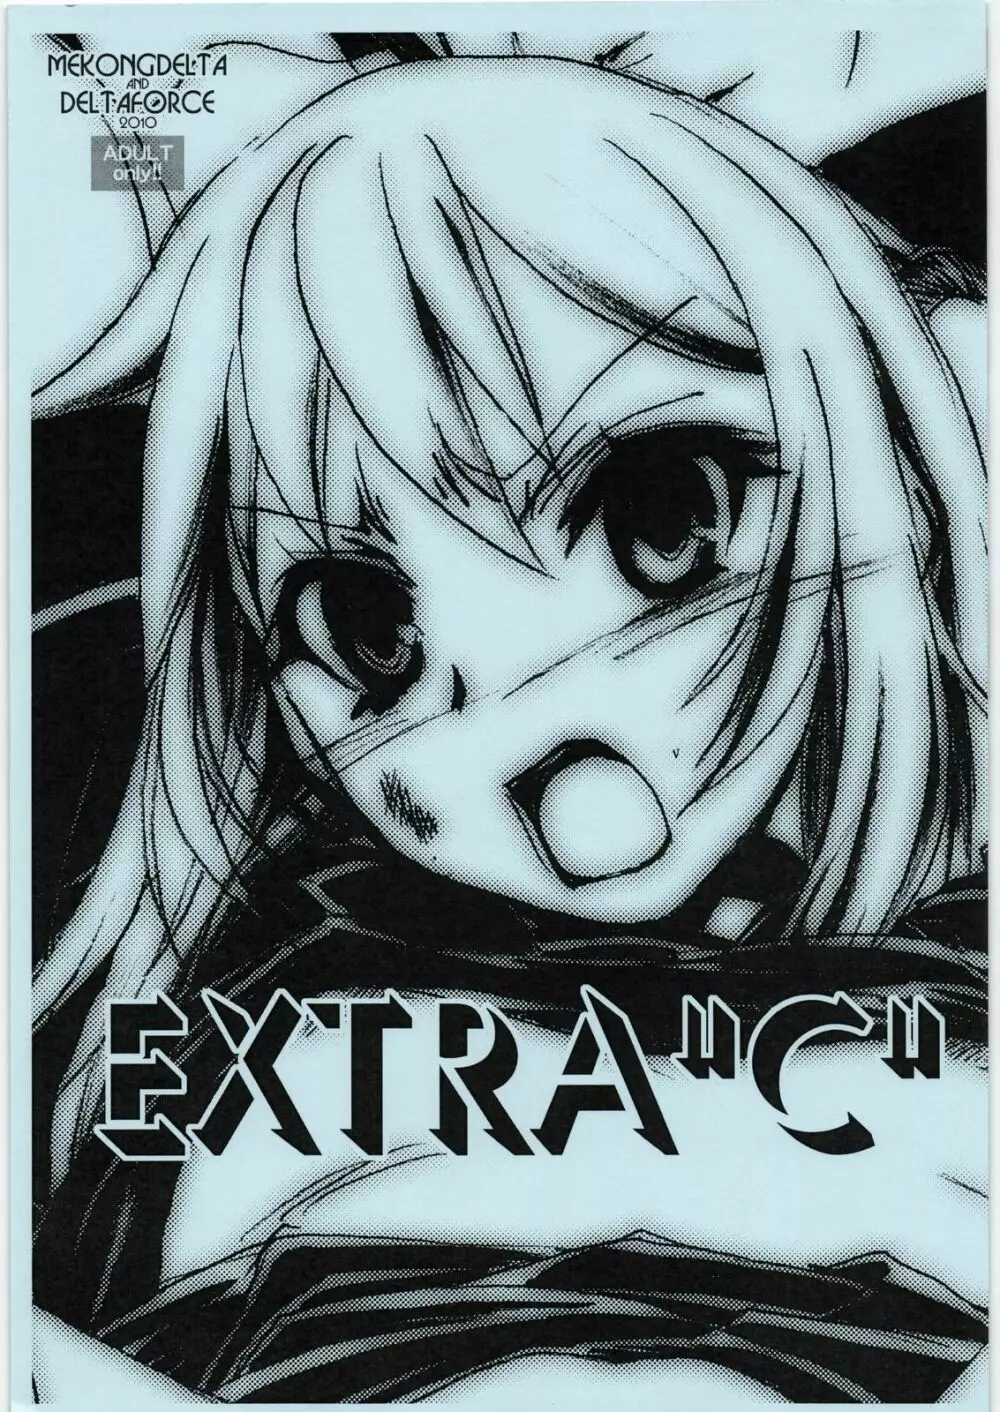 EXTRA ”C” 2010.08.13